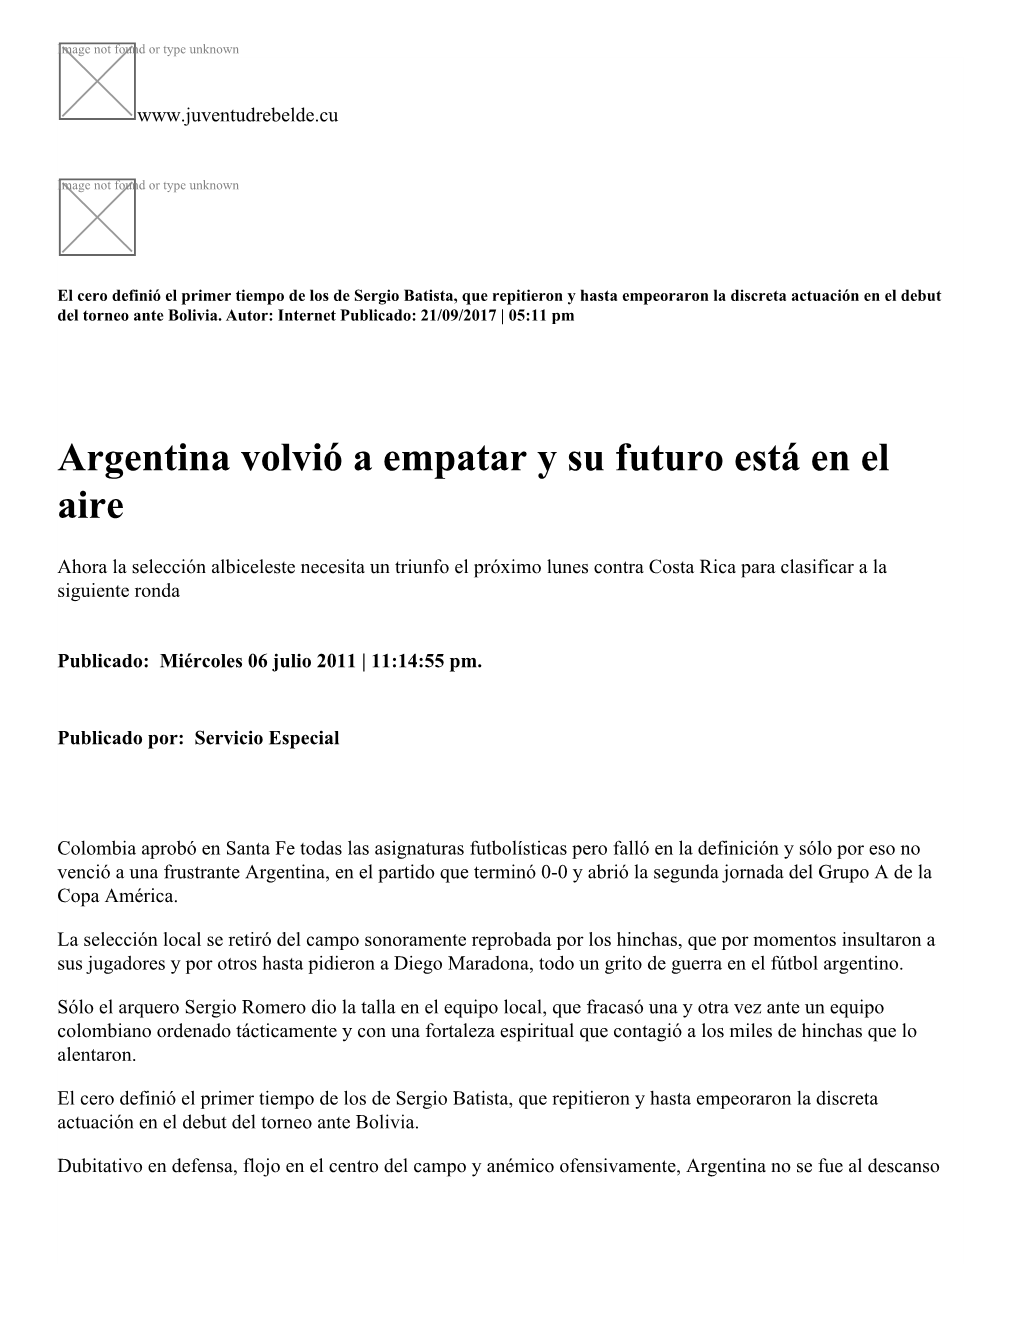 Argentina Volvió a Empatar Y Su Futuro Está En El Aire